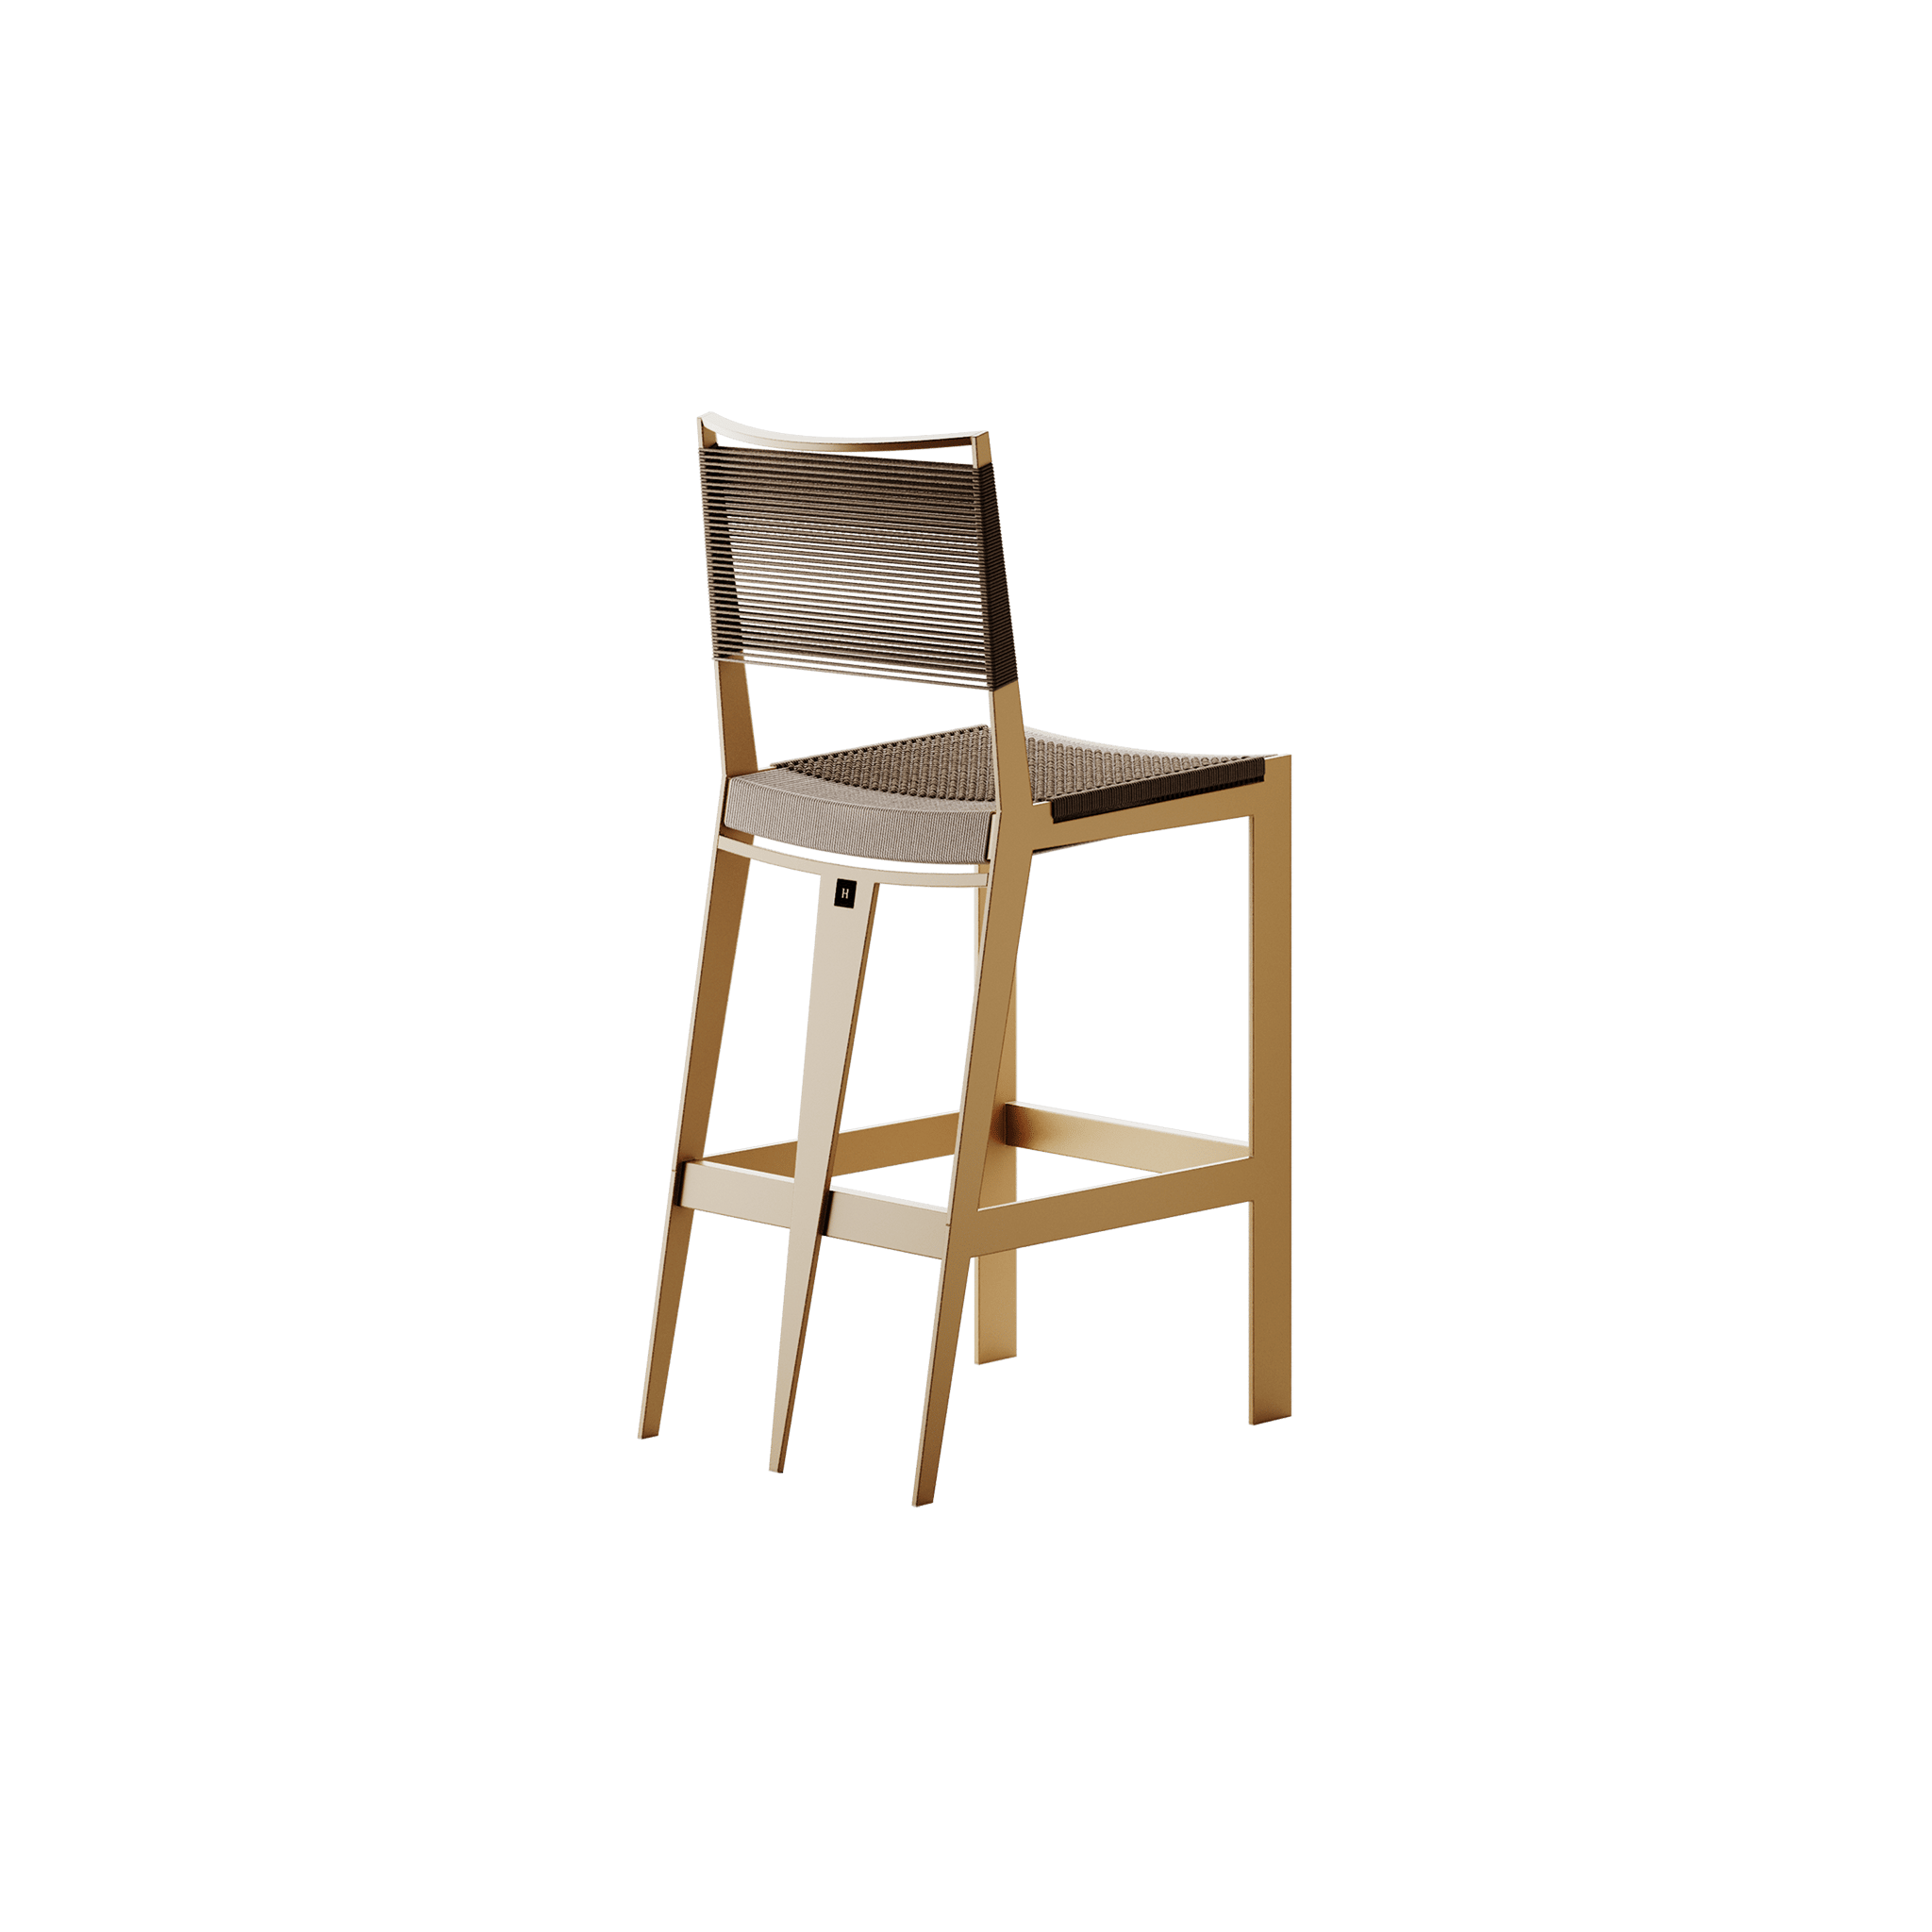 HOMMESOTD012 002 hommes studio cinco bair chair gold quarter 2